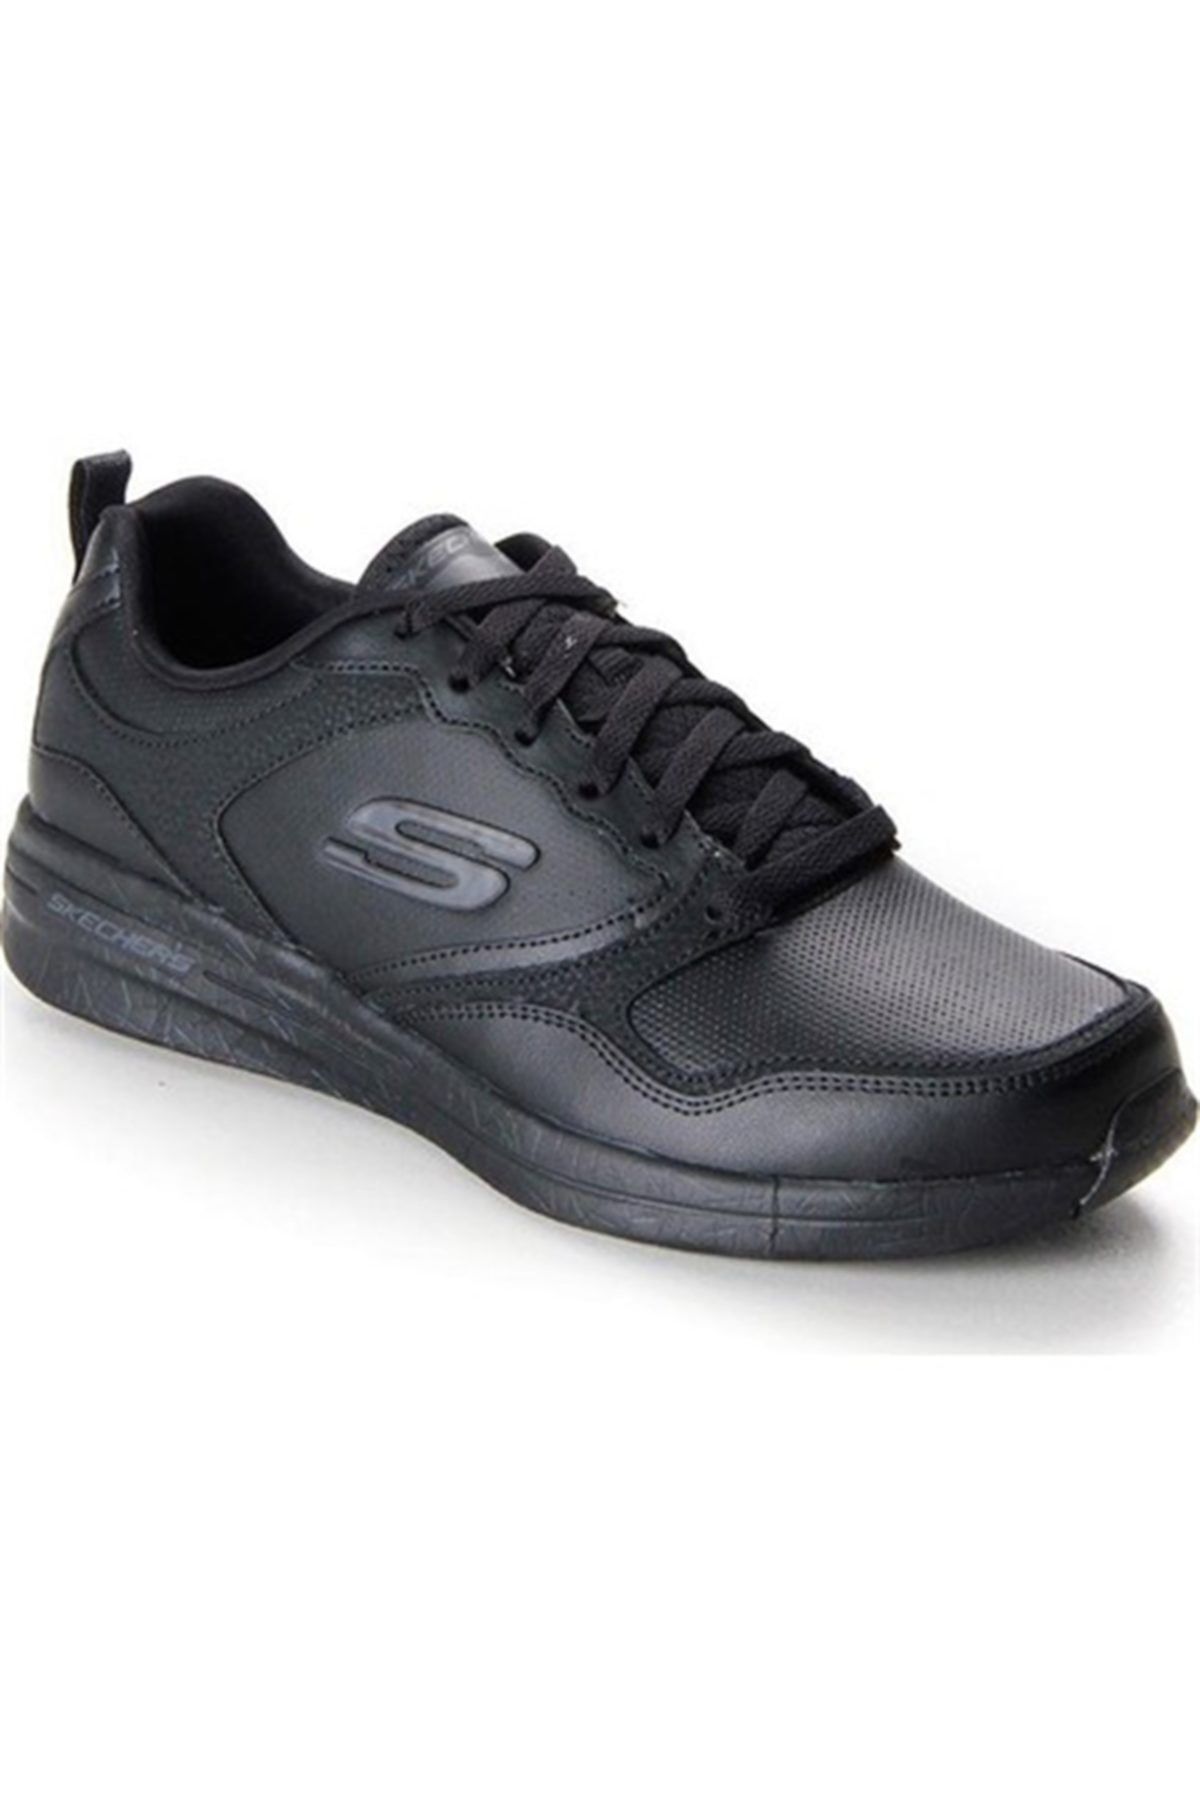 Skechers BURST 2.0-İMPLUSE ACT Erkek Siyah Spor Ayakkabı-999763 BBK